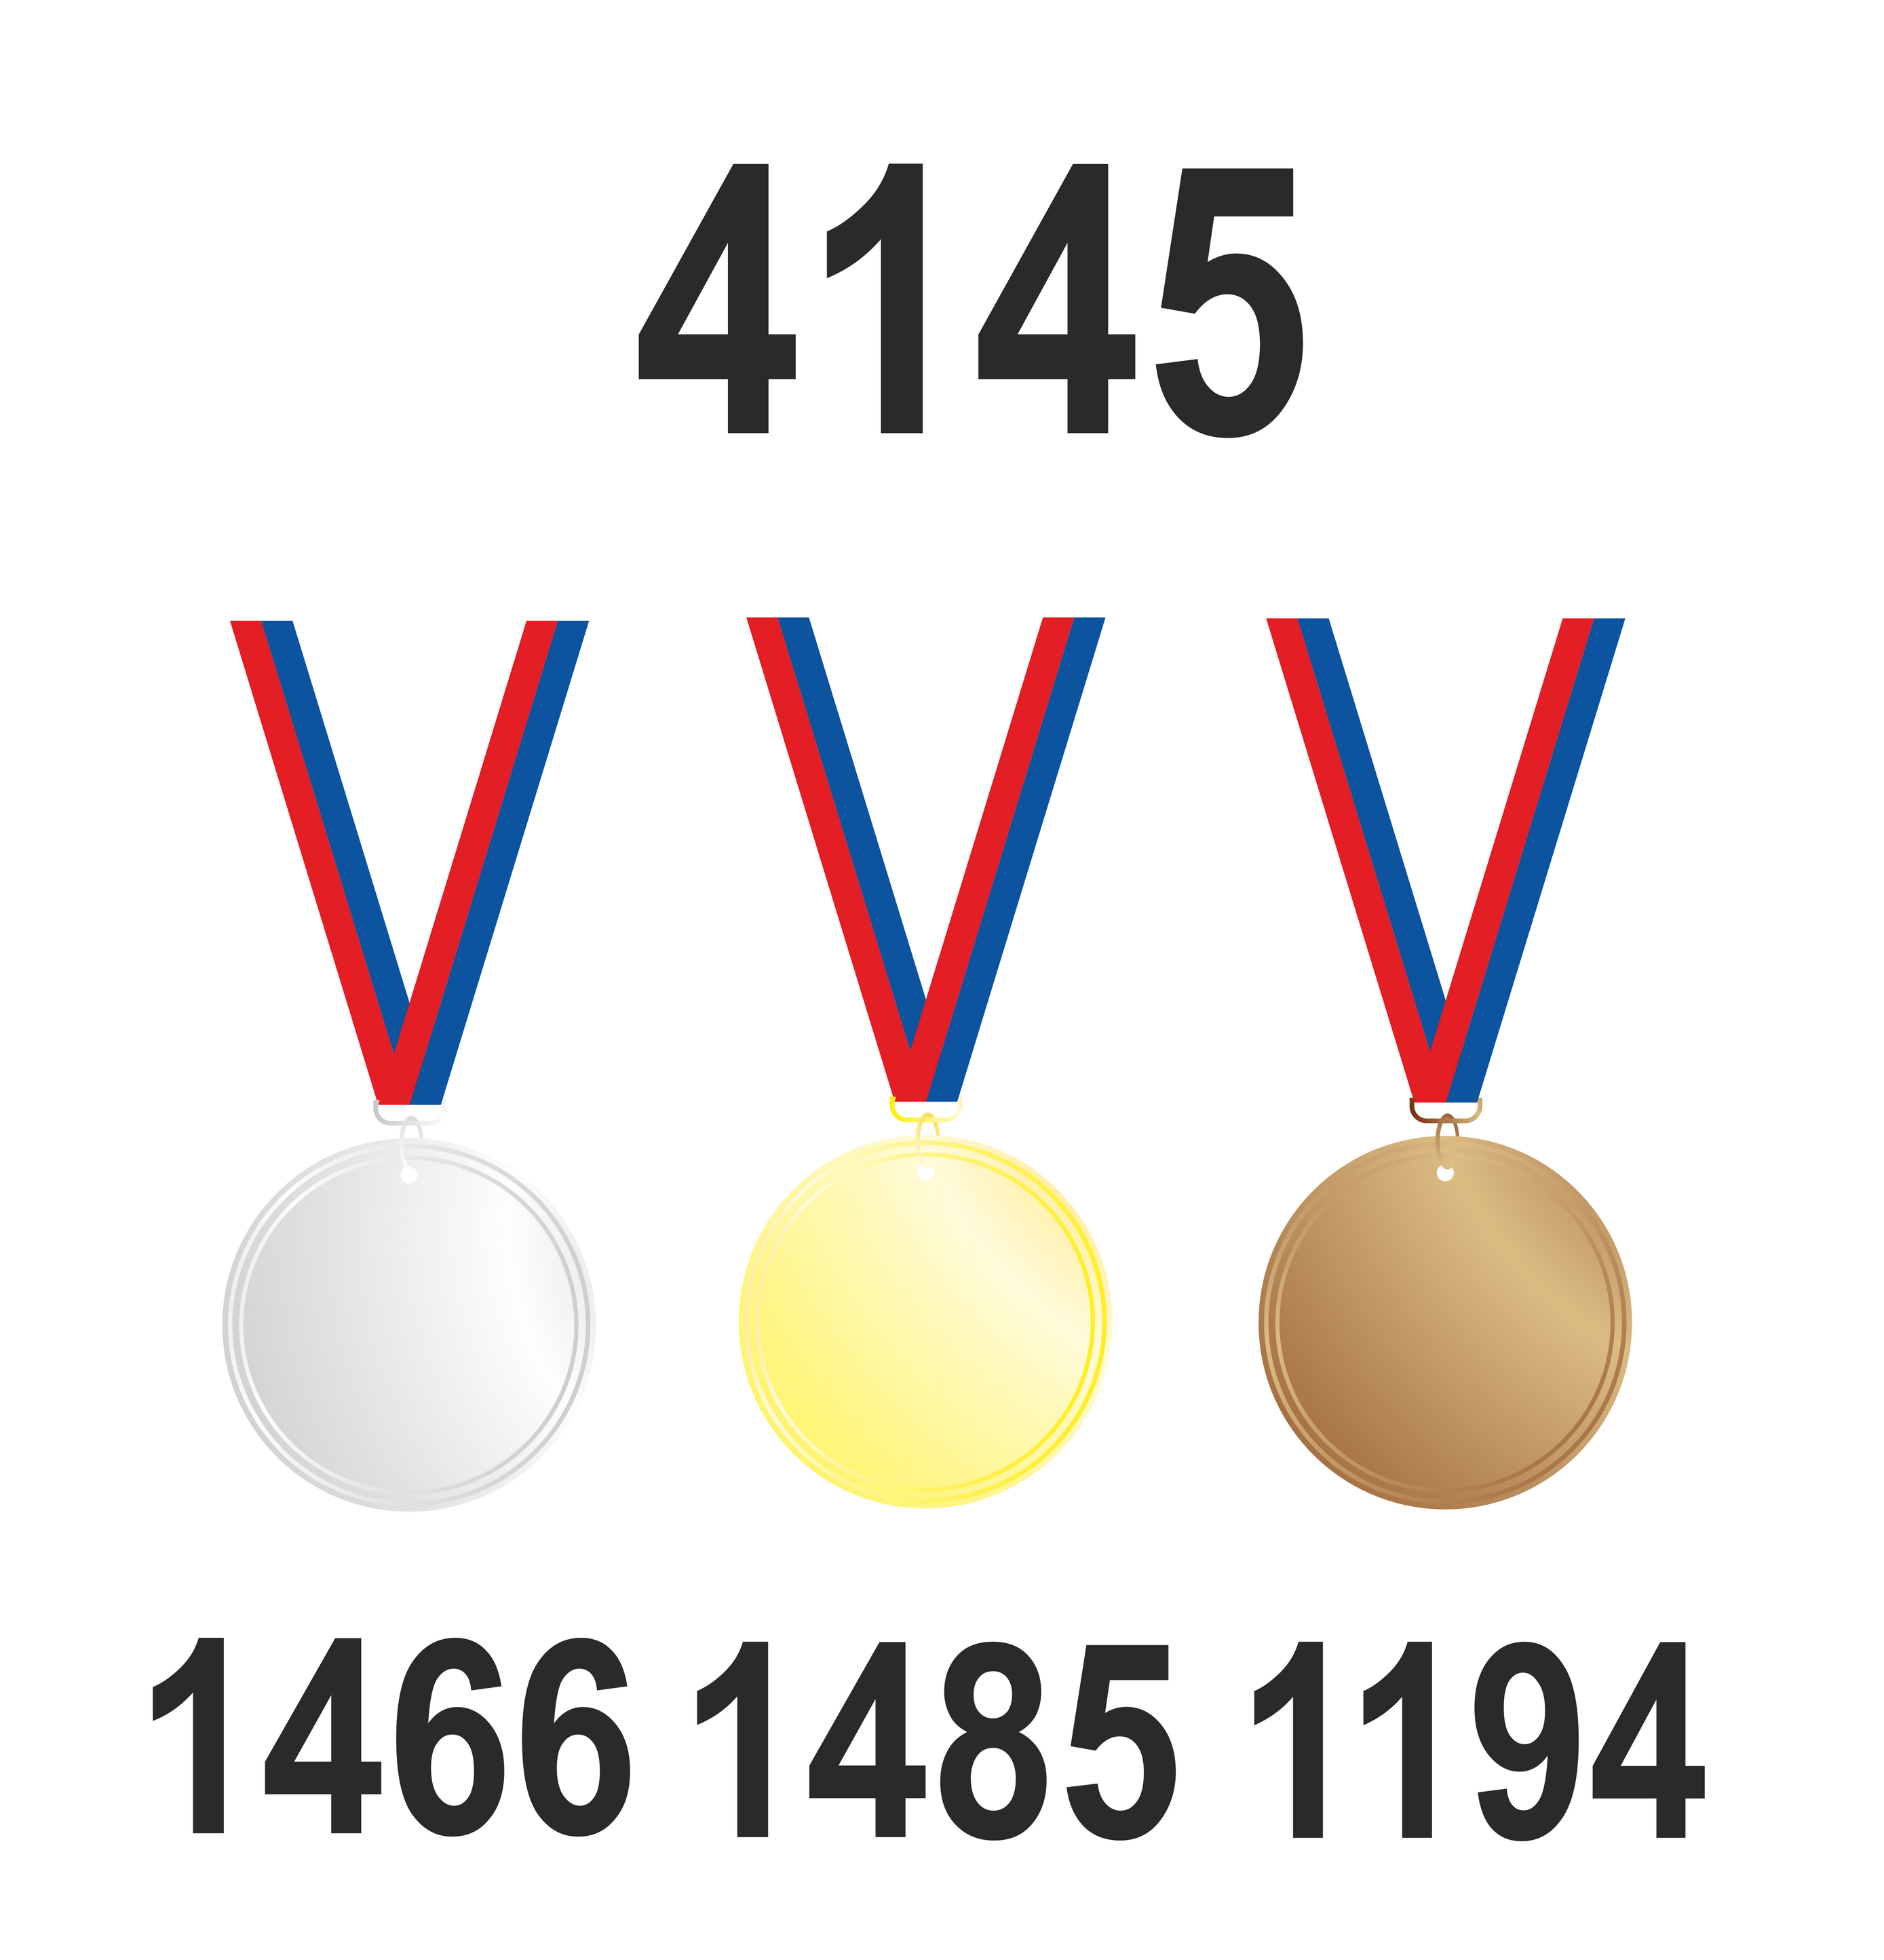 Количество завоеванных медалей (3410 штук)